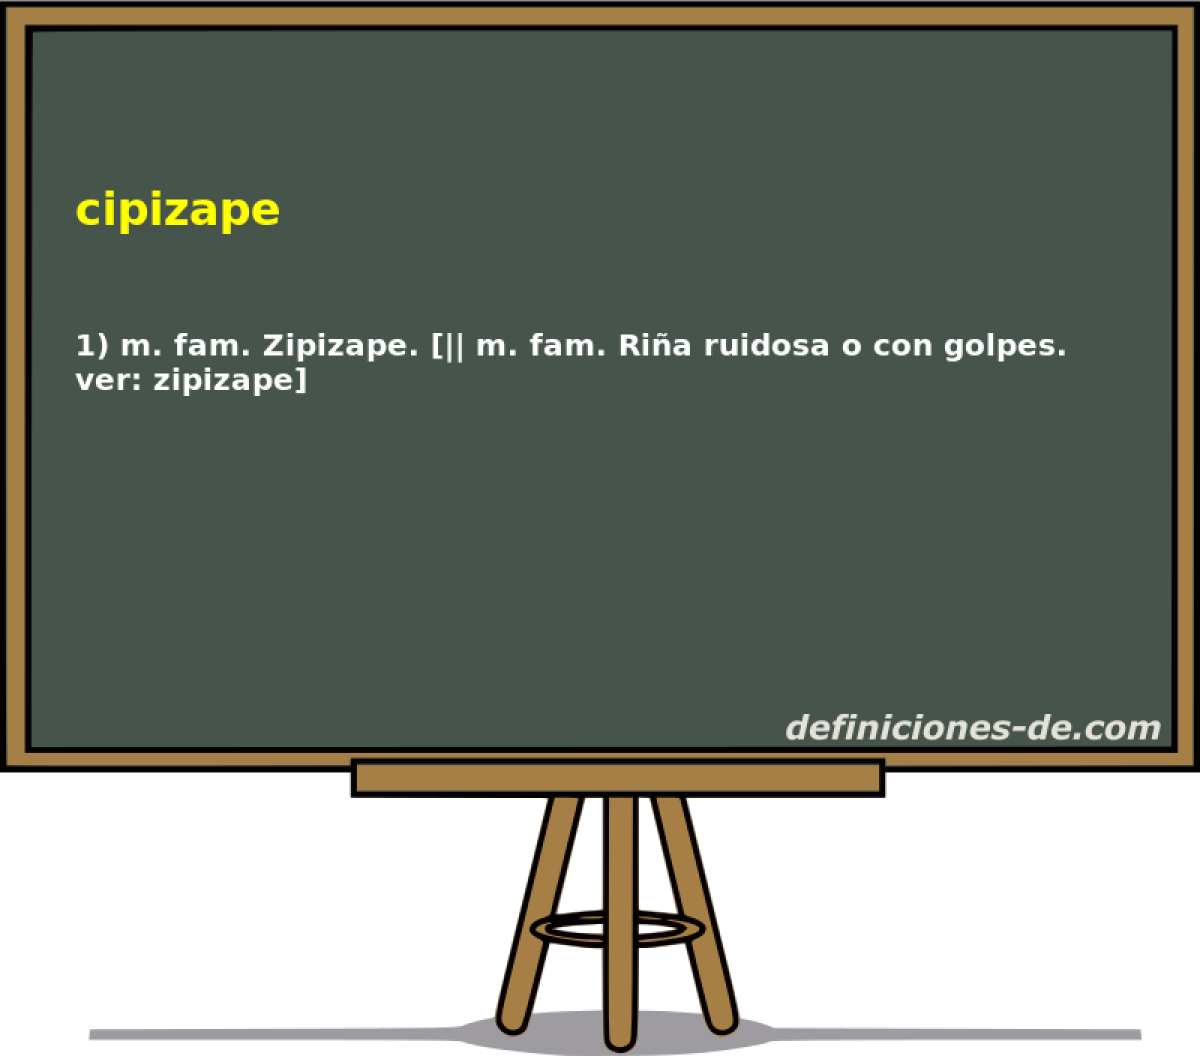 cipizape 